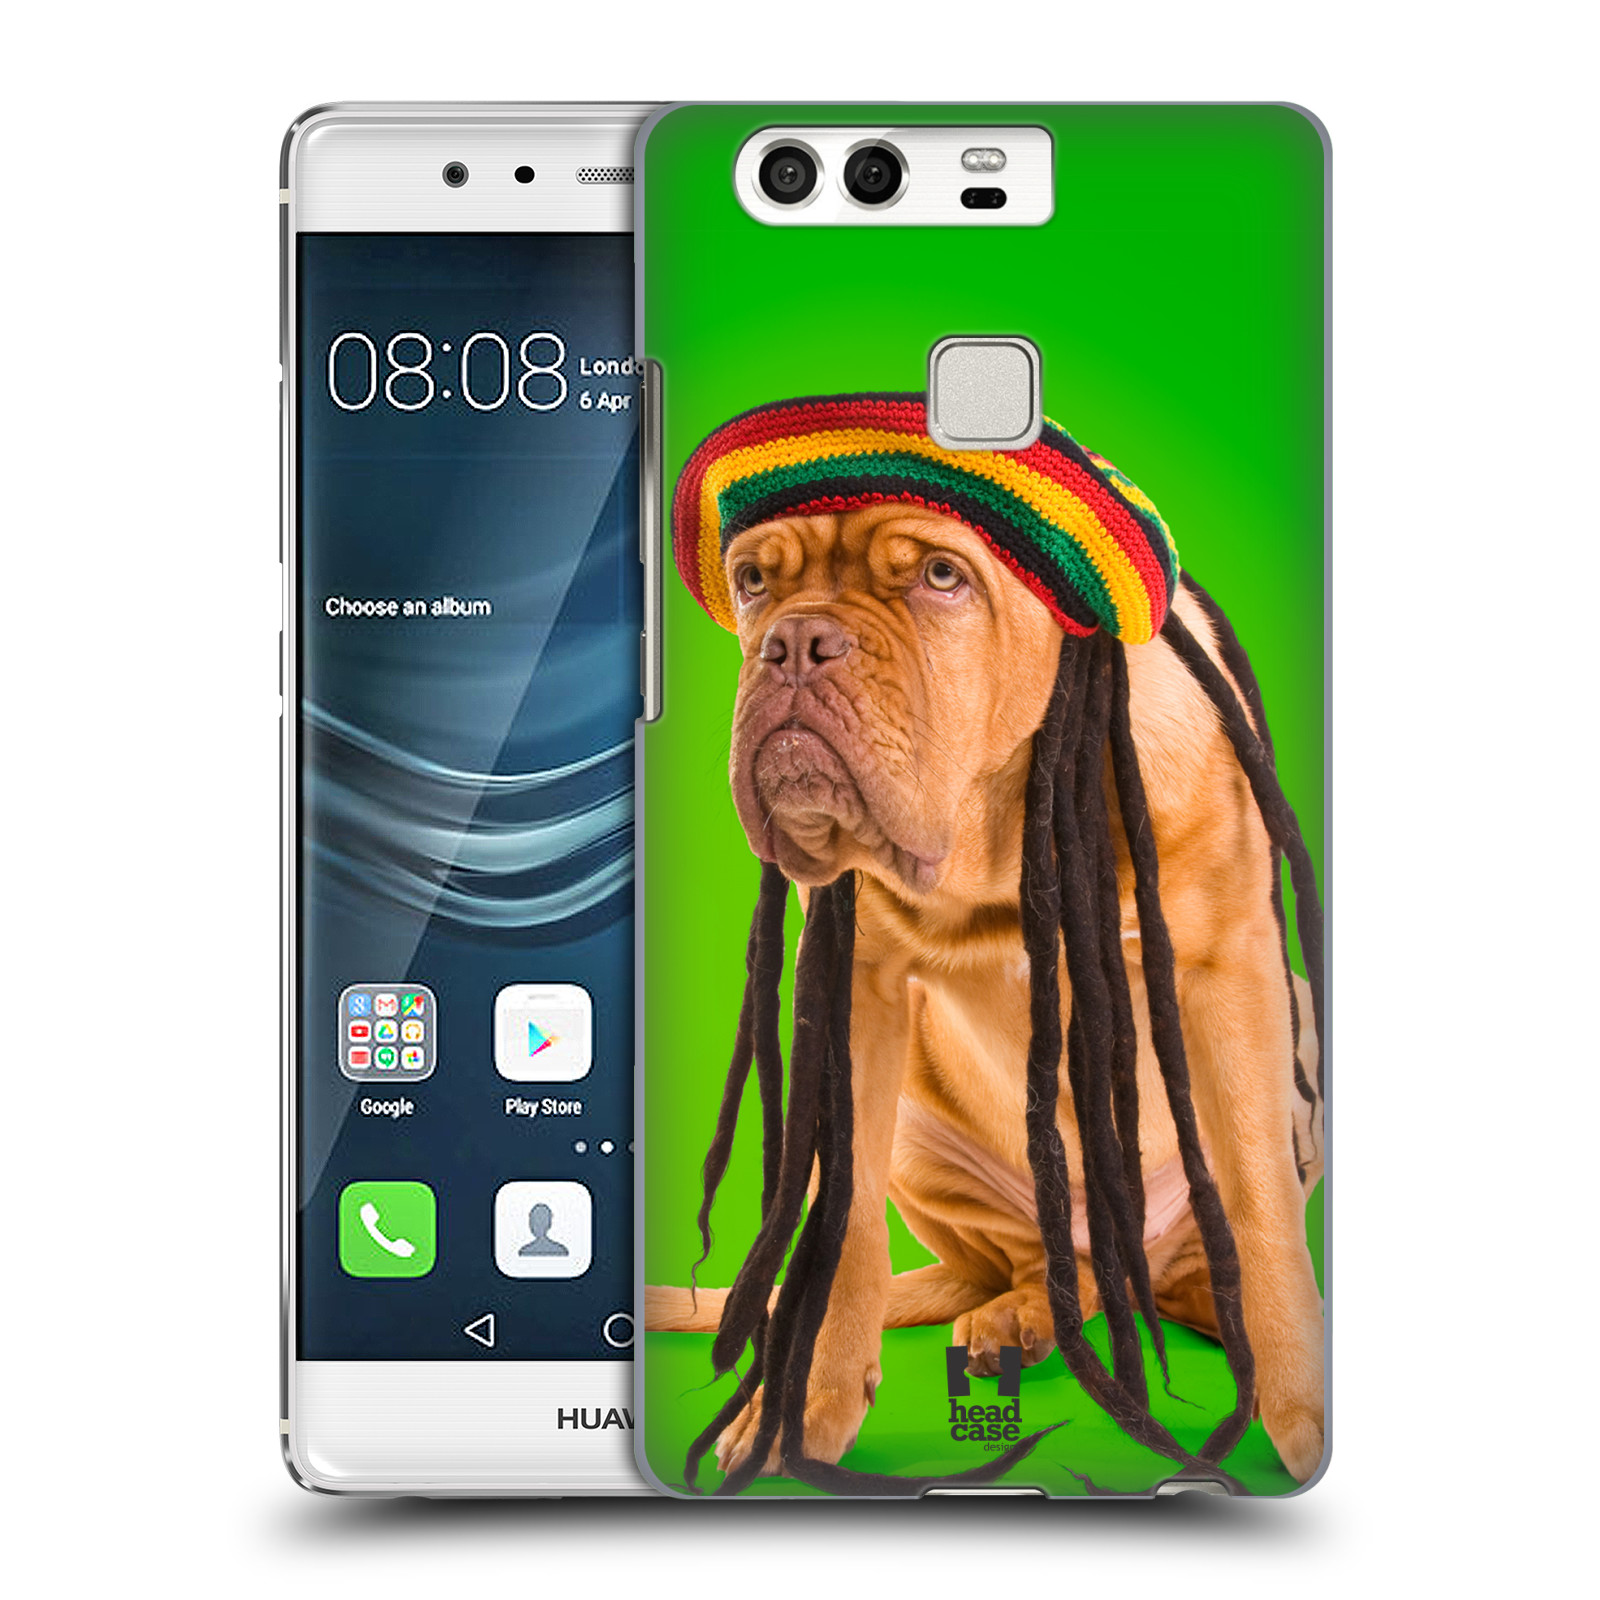 HEAD CASE plastový obal na mobil Huawei P9 / P9 DUAL SIM vzor Legrační zvířátka pejsek dredy Rastafarián